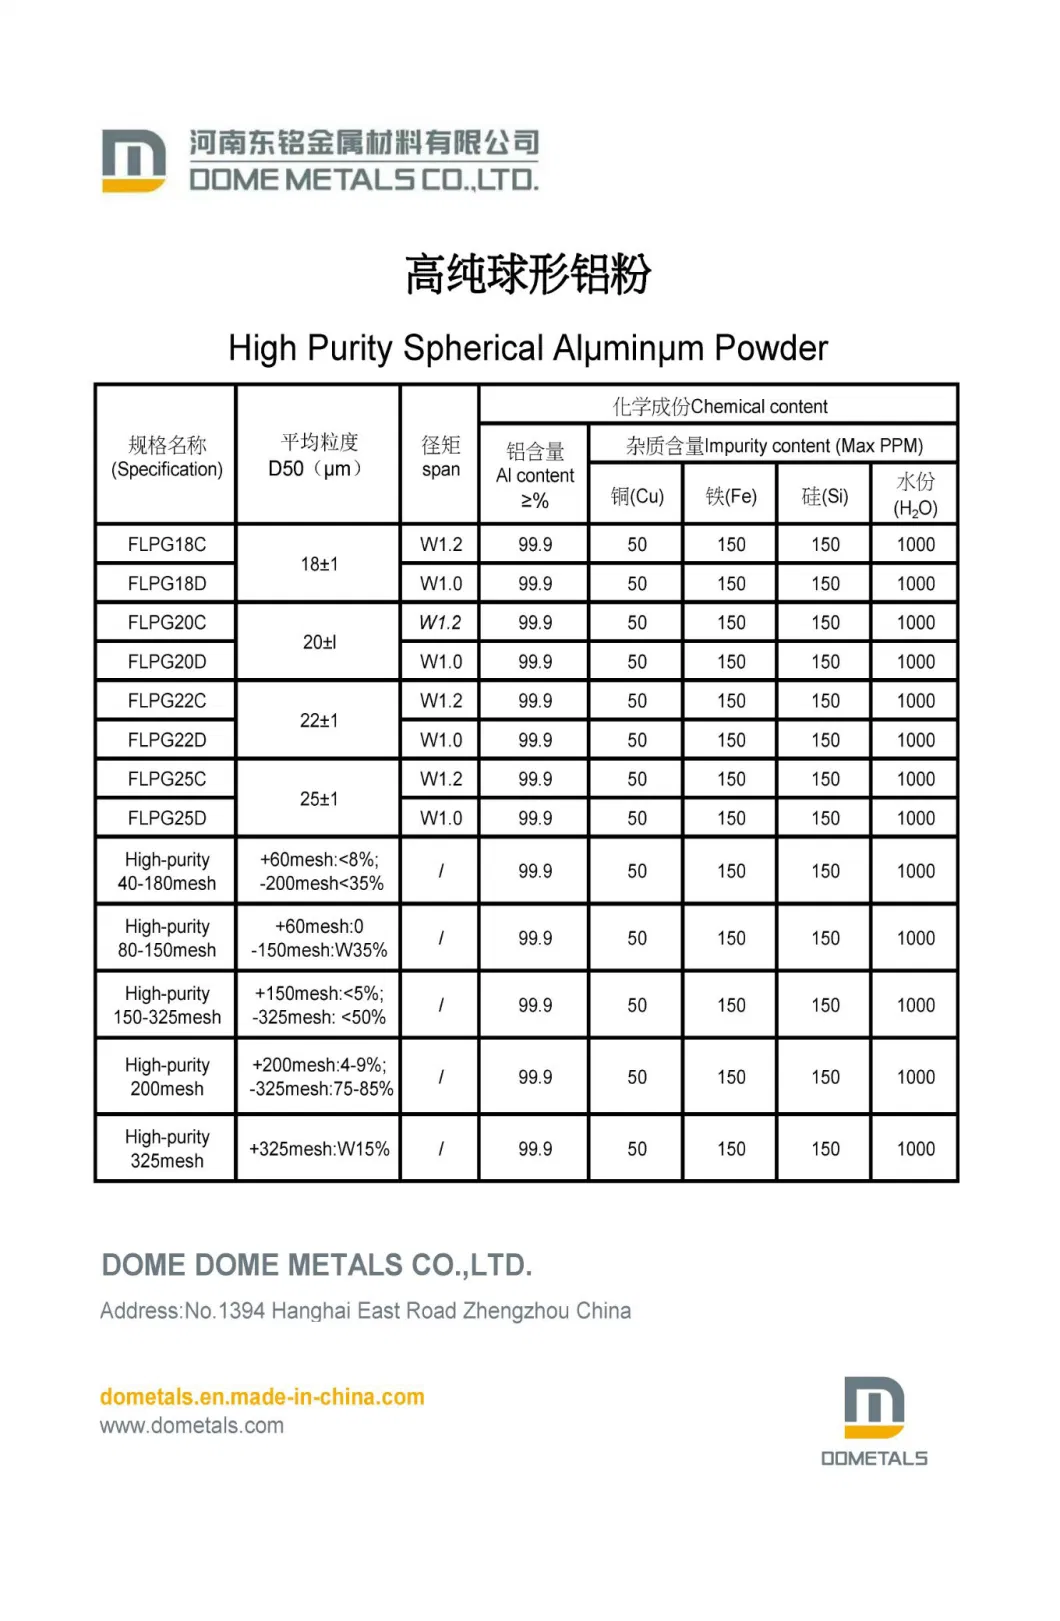 Fine Spherical Aluminum Powder for Conductive Paste (1-5um)